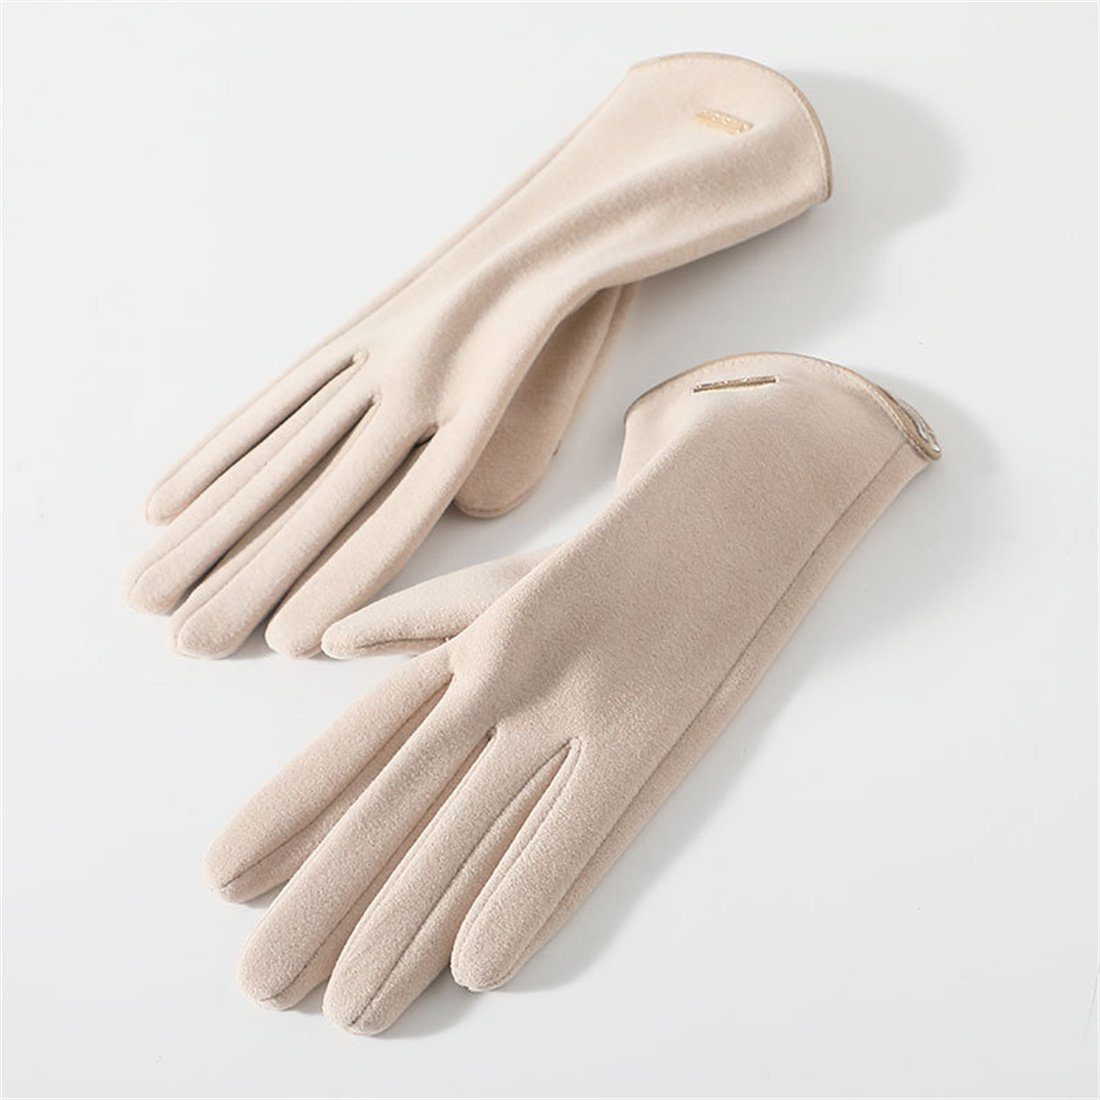 DÖRÖY Fleecehandschuhe Women's Winter Padded Touch Screen Gloves,Reiten Warme Handschuhe khaki